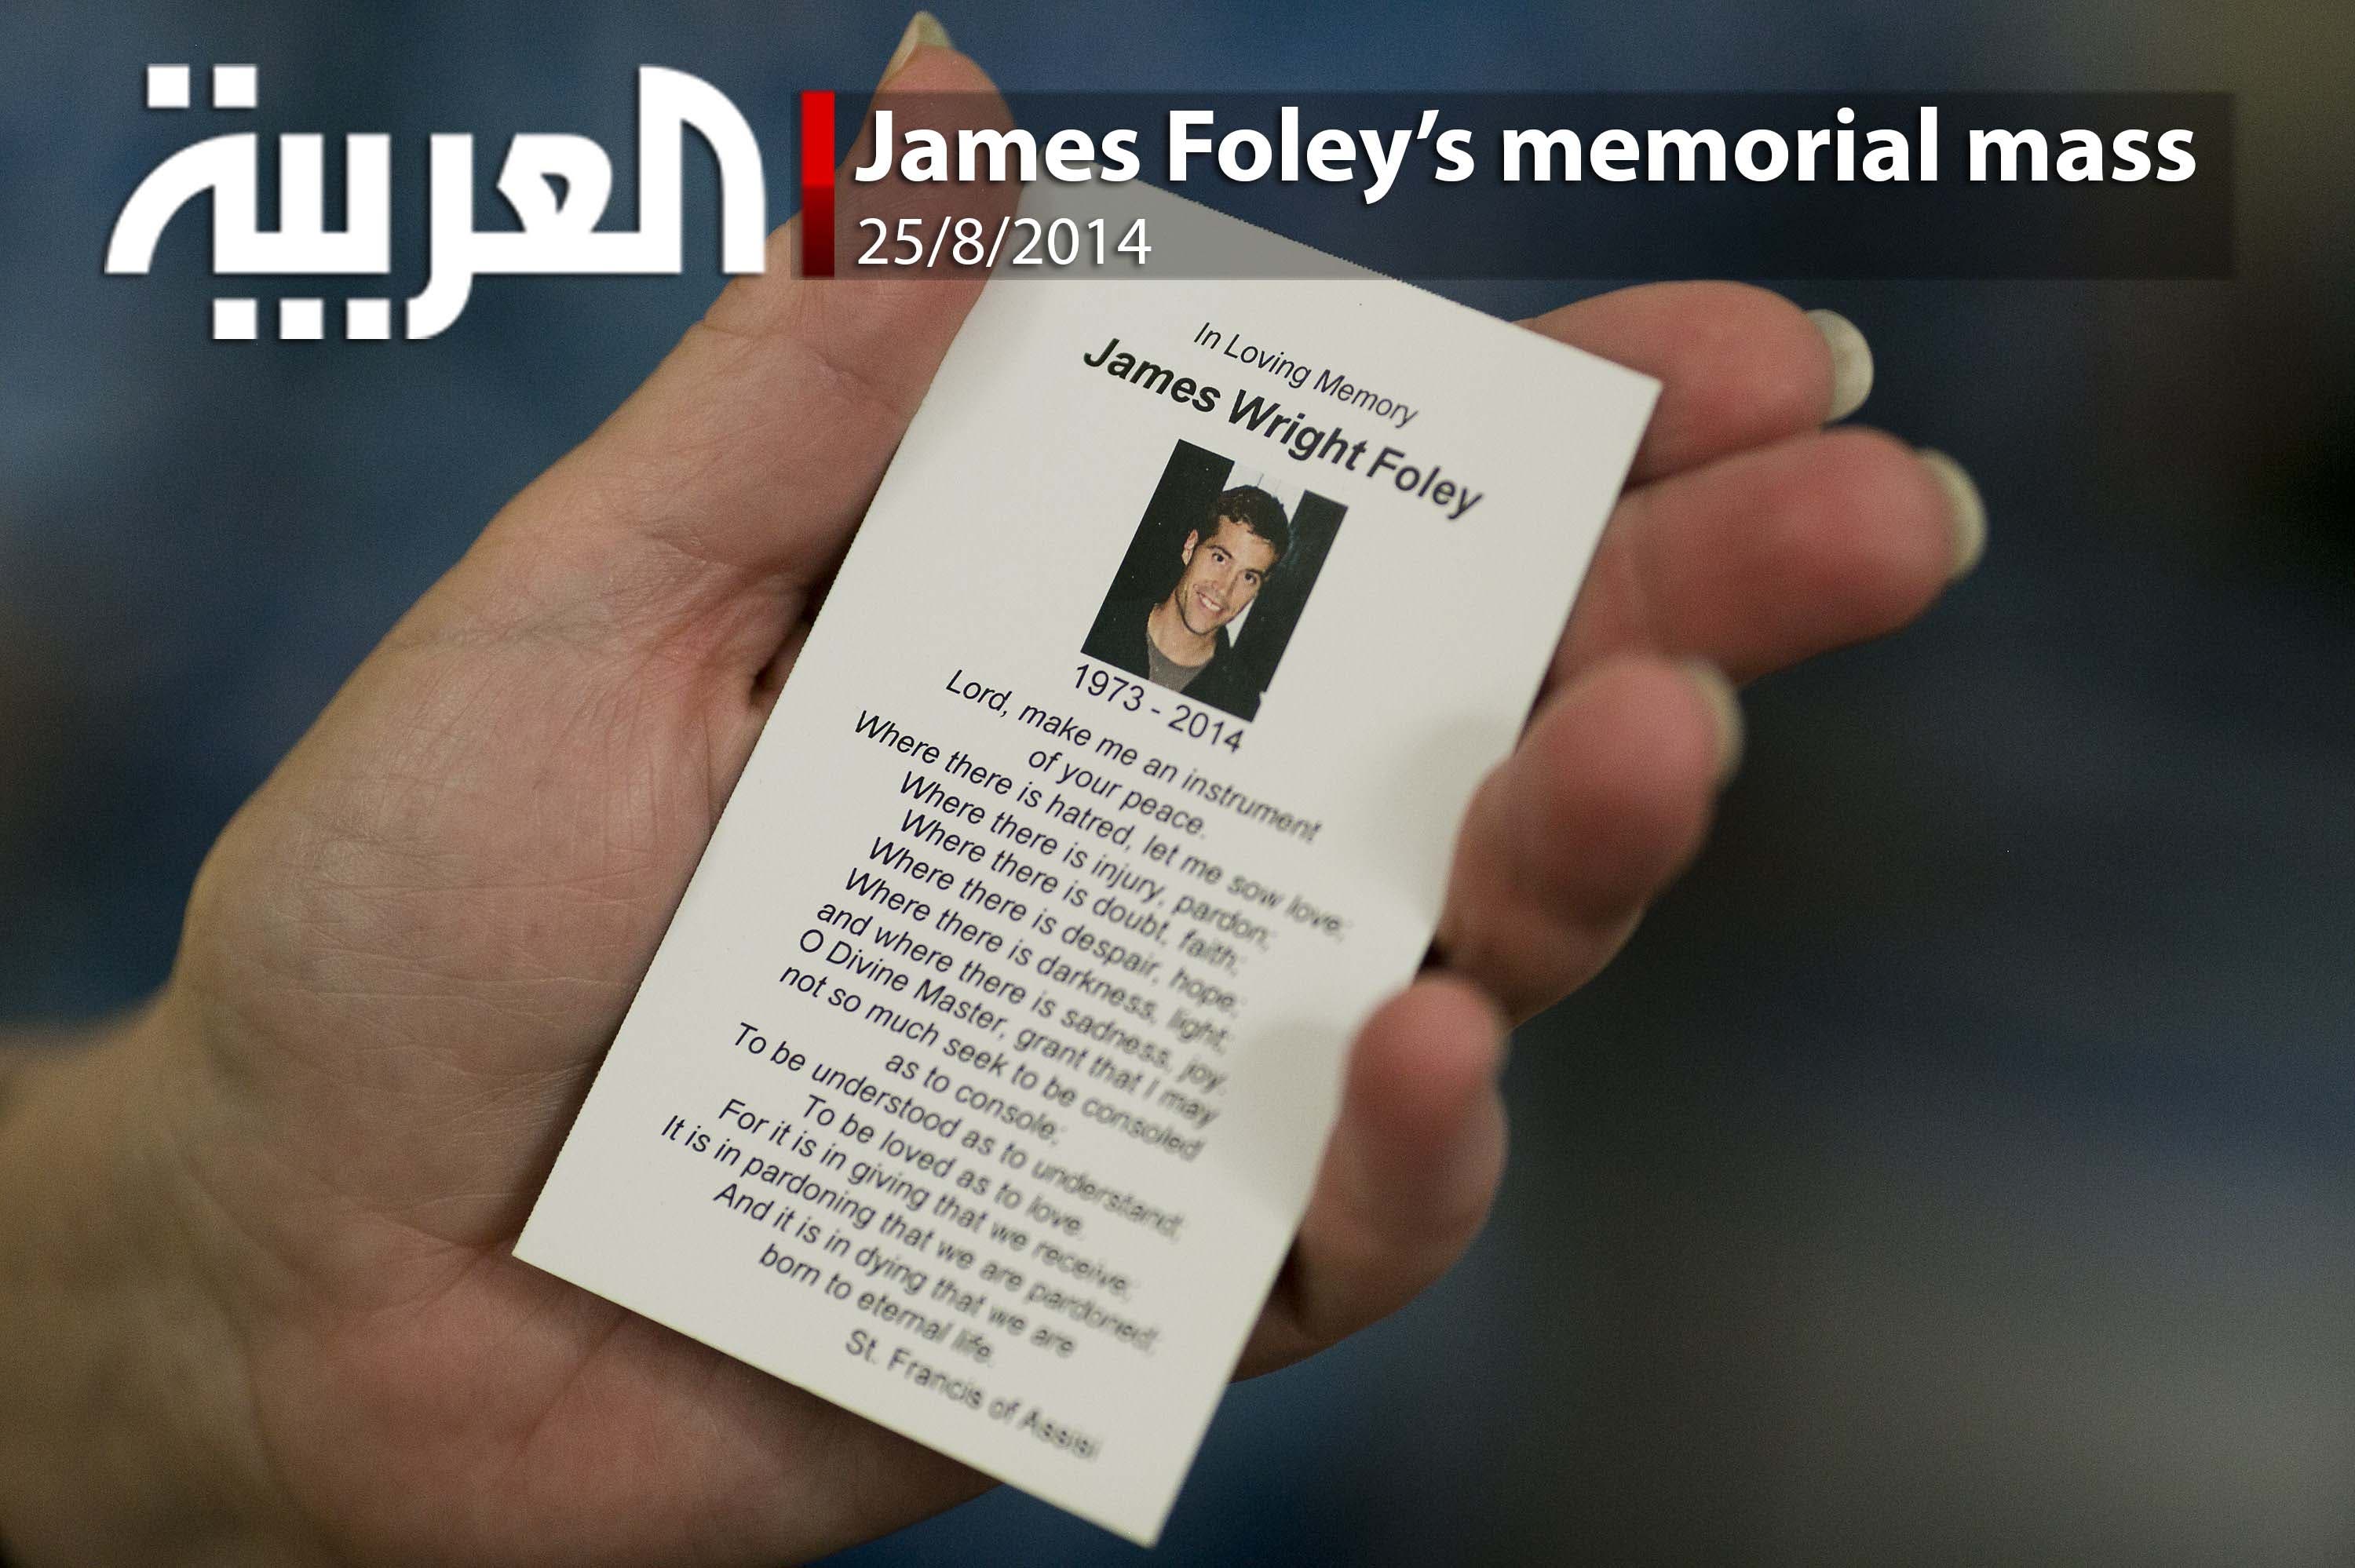 James Foley’s memorial mass